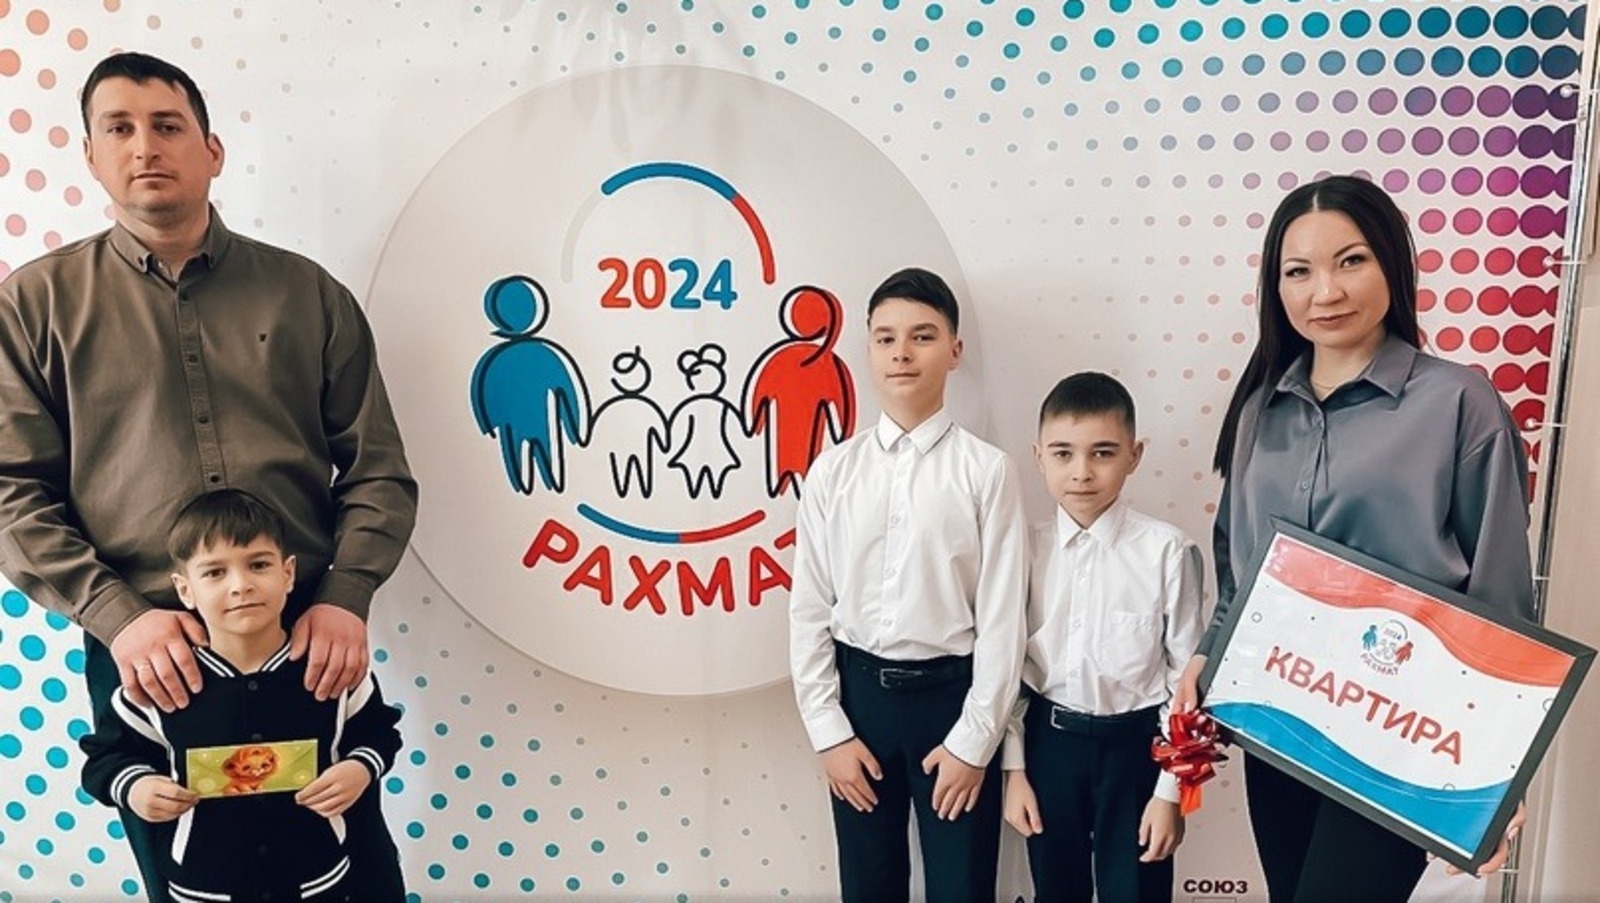 Семья из Башкирии, проголосовав на выборах, стала обладателем квартиры по акции «Рахмат»